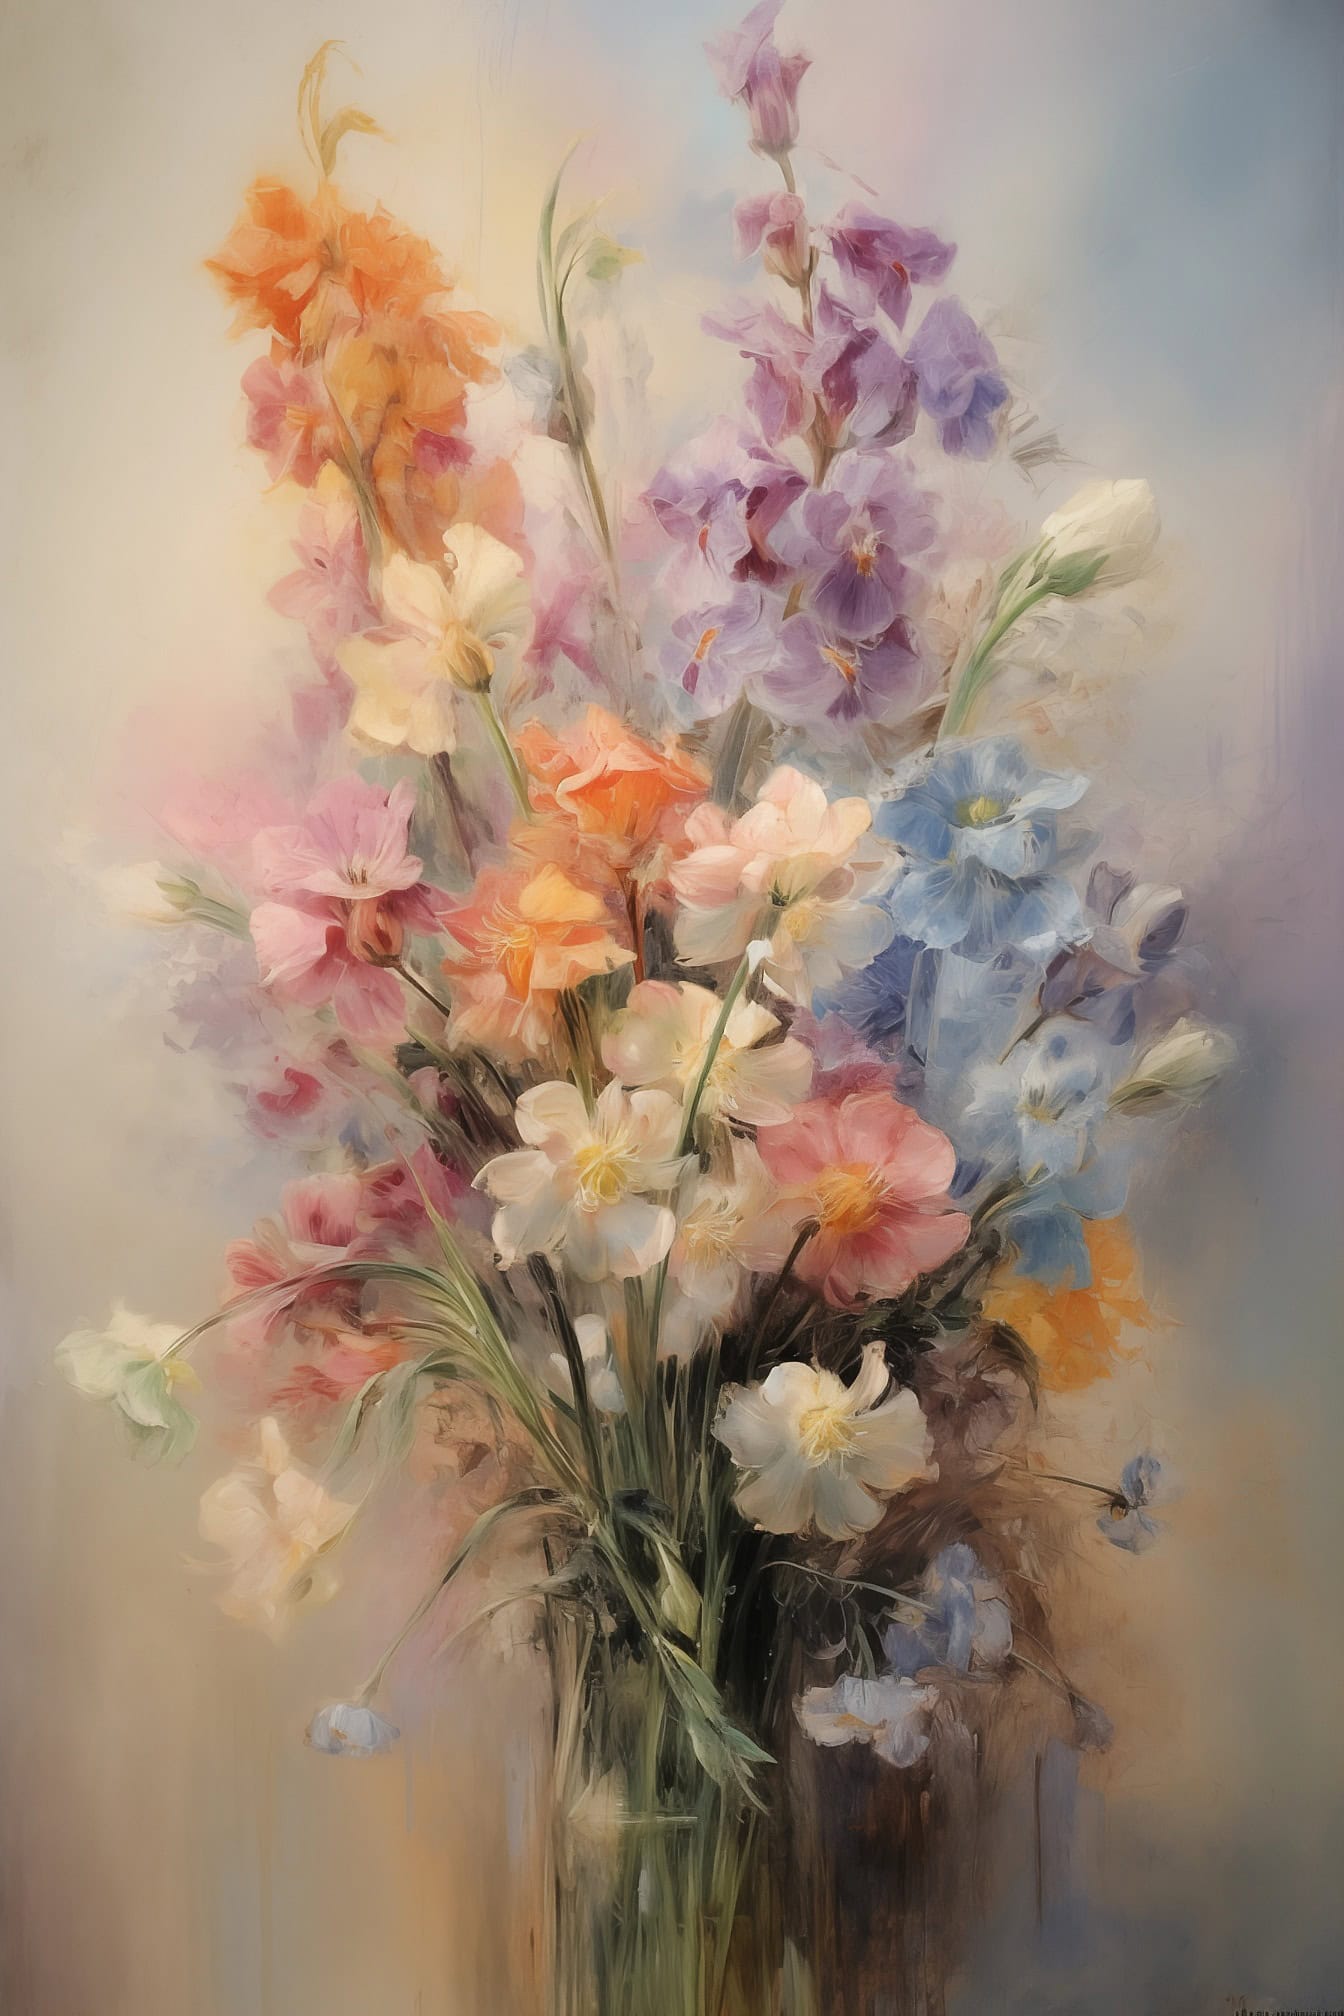 En härlig oljemålning med stilleben i pastellfärger av blommor med suddig bakgrund